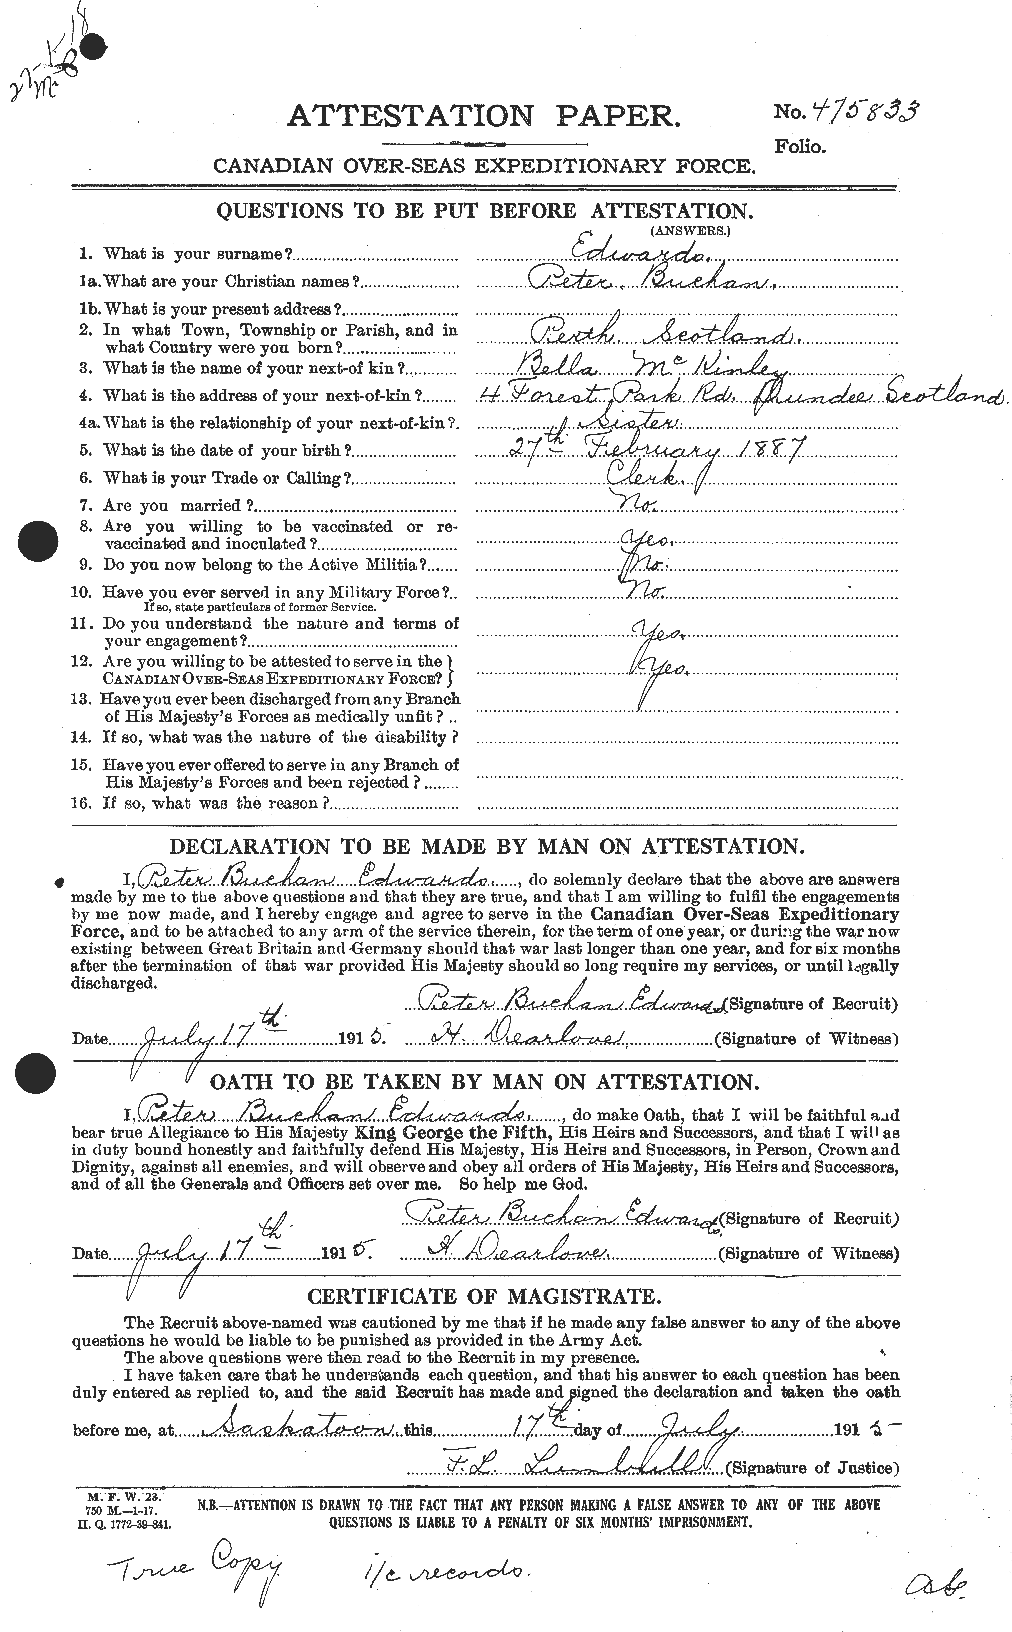 Dossiers du Personnel de la Première Guerre mondiale - CEC 310240a